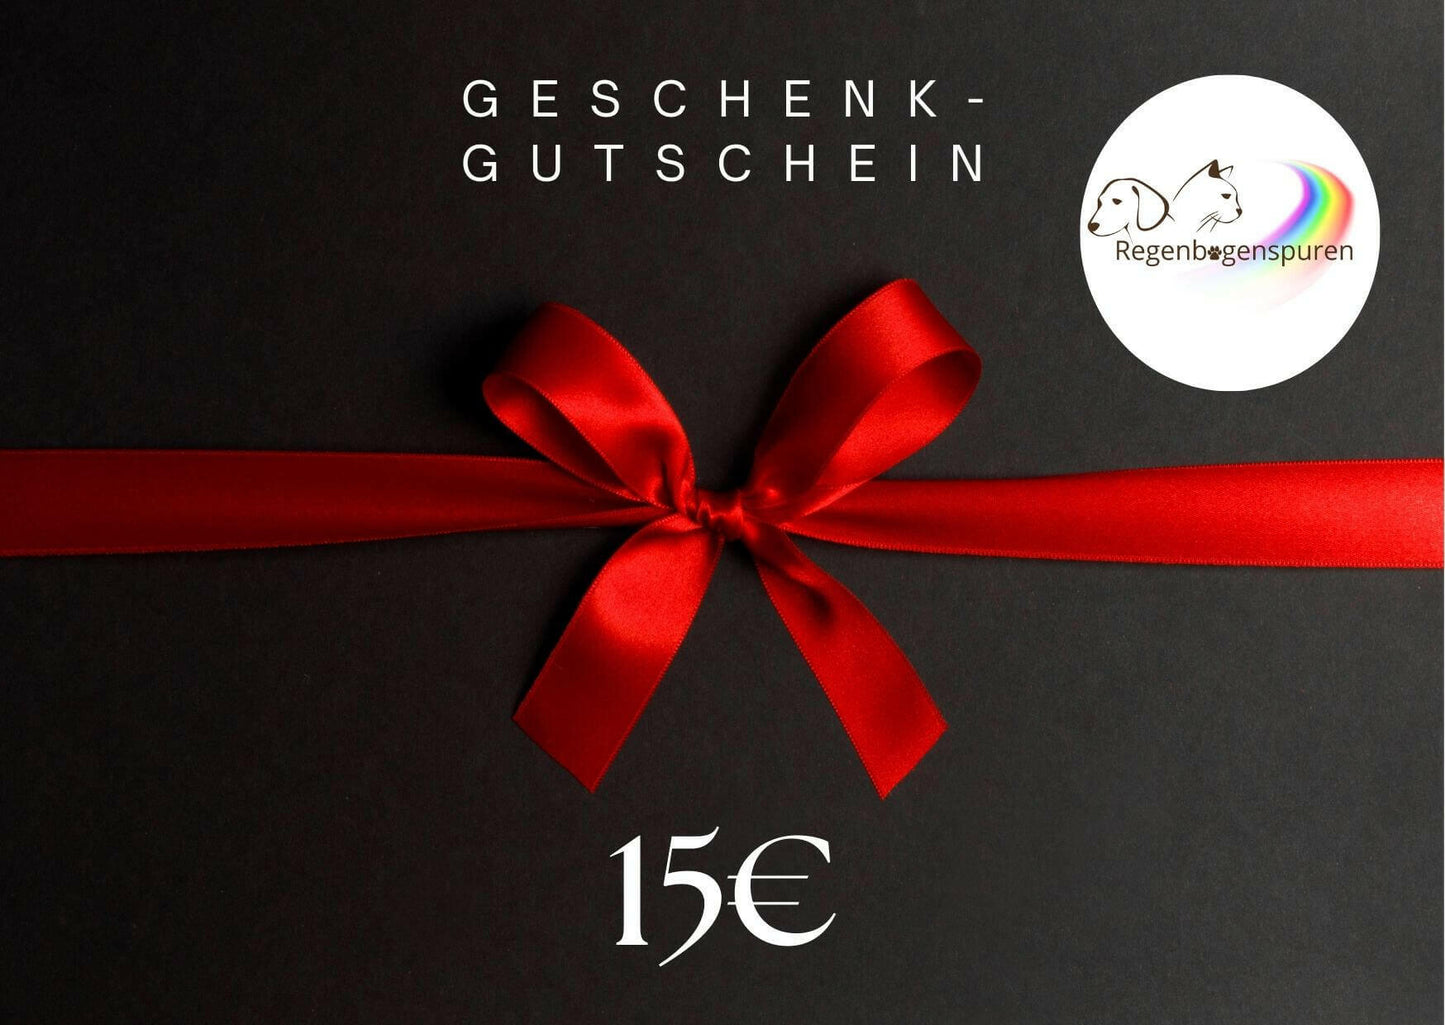 Schwarzer Geschenkgutschein für 15 Euro mit roter Schleife und Logo von Regenbogenspuren.